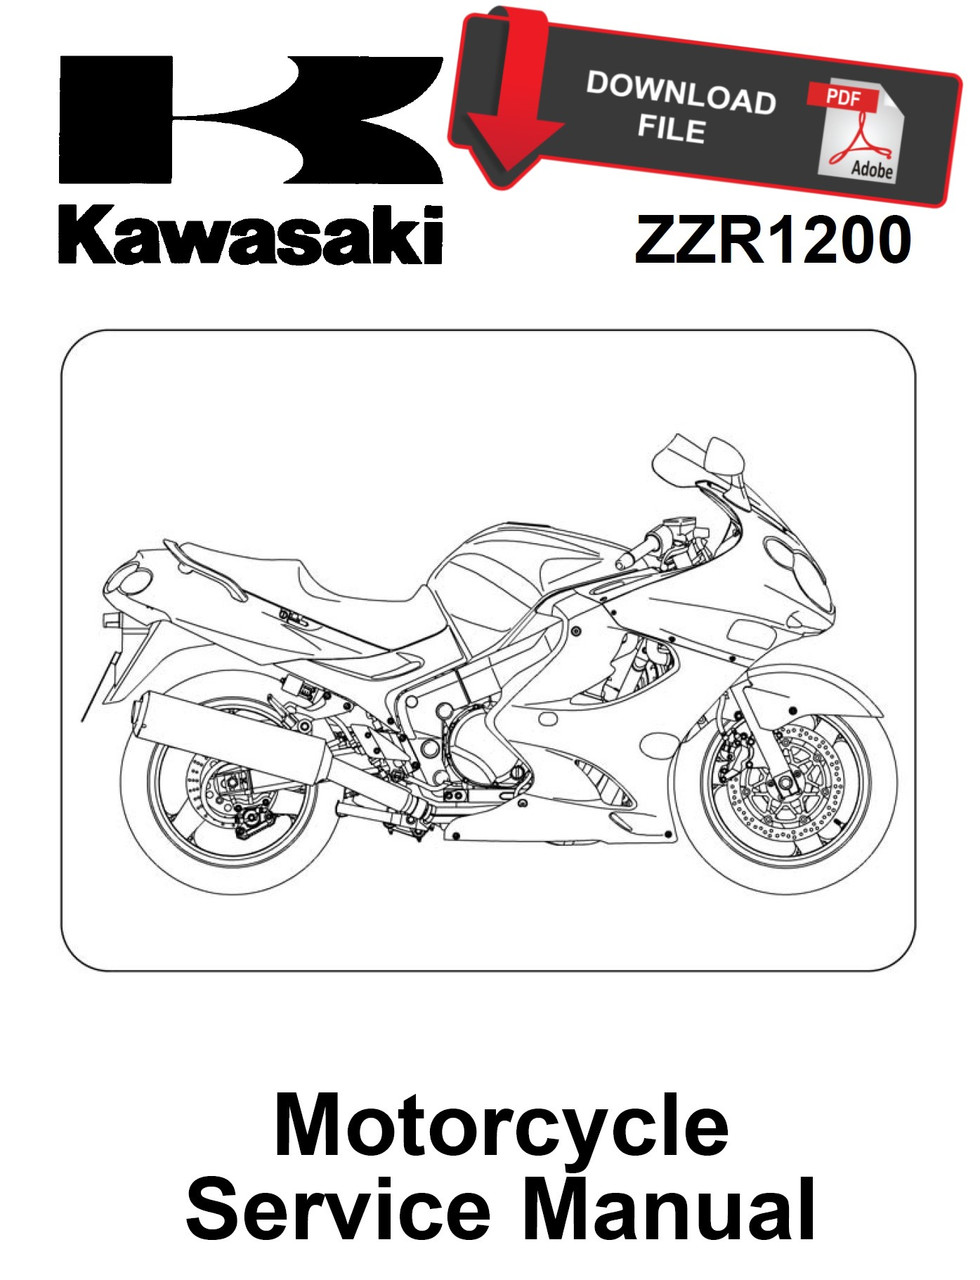 ZZR1200 Service Manual